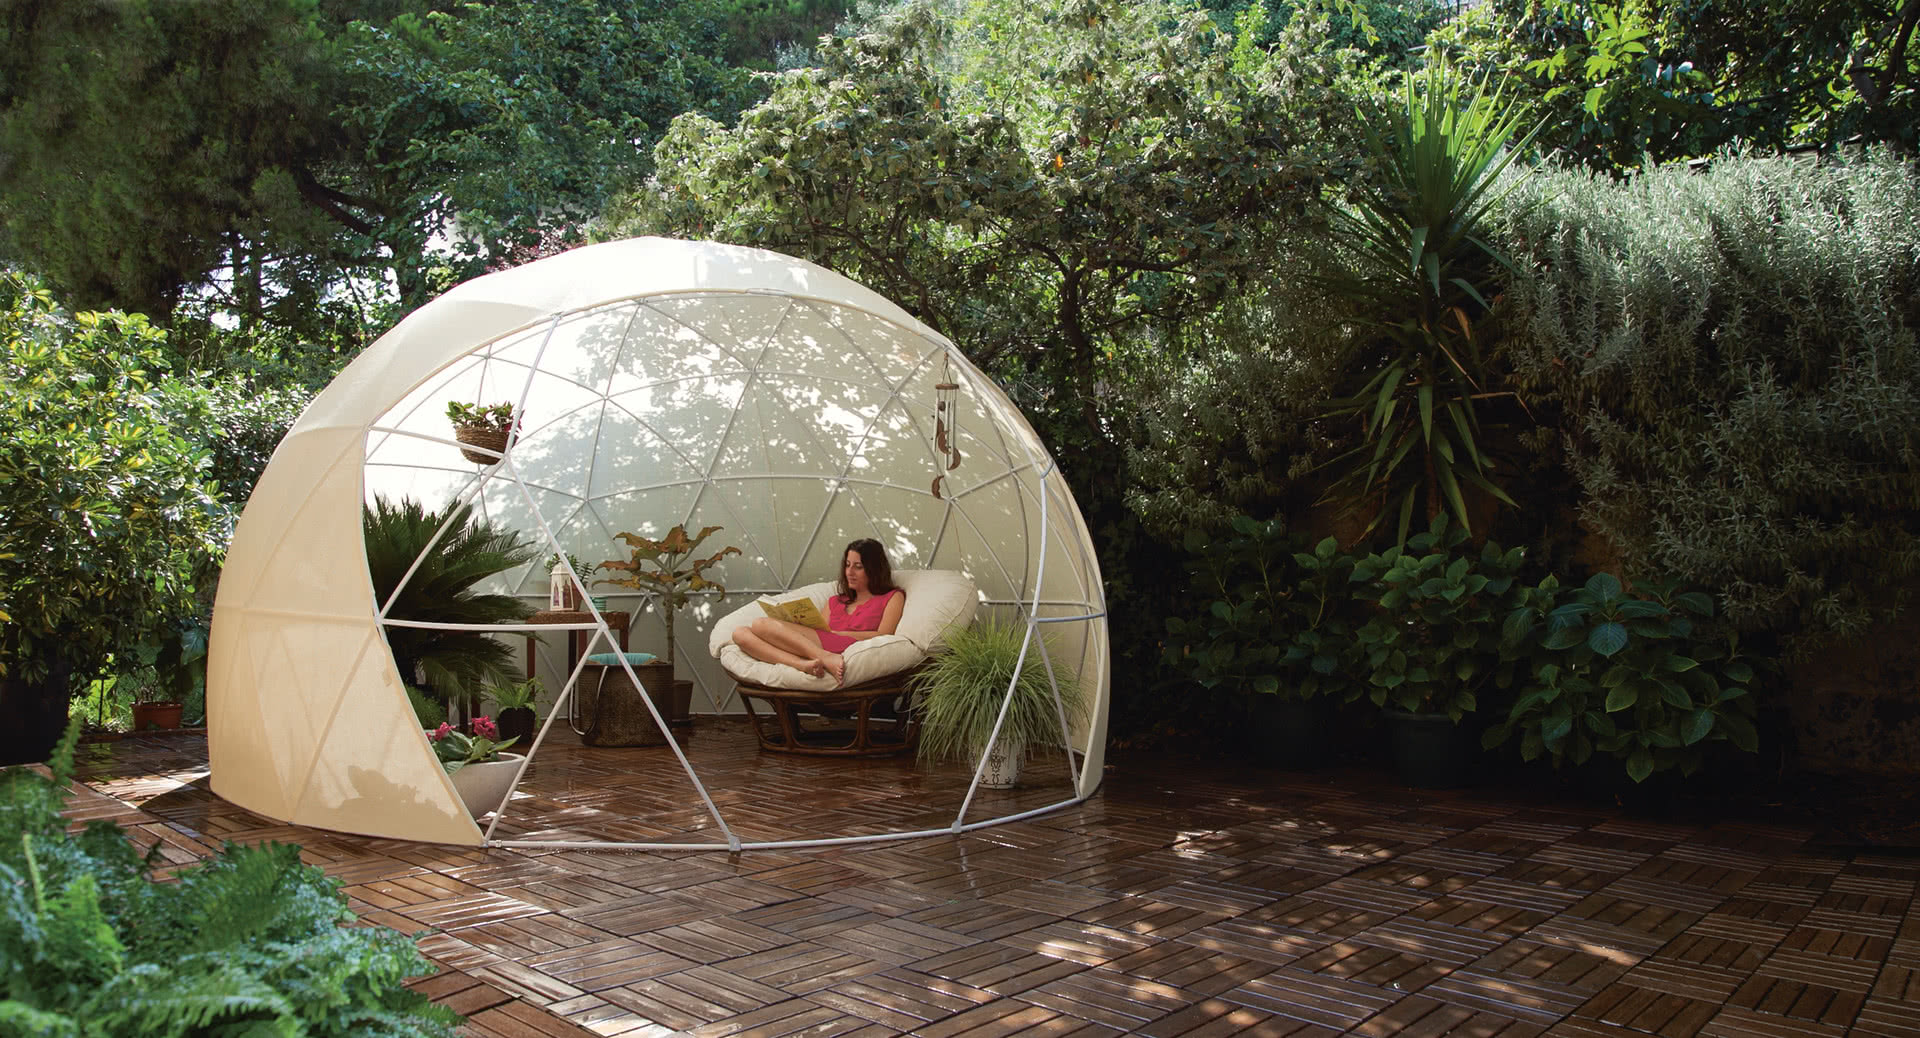 Où trouver un garden igloo bulle de jardin - Clematc